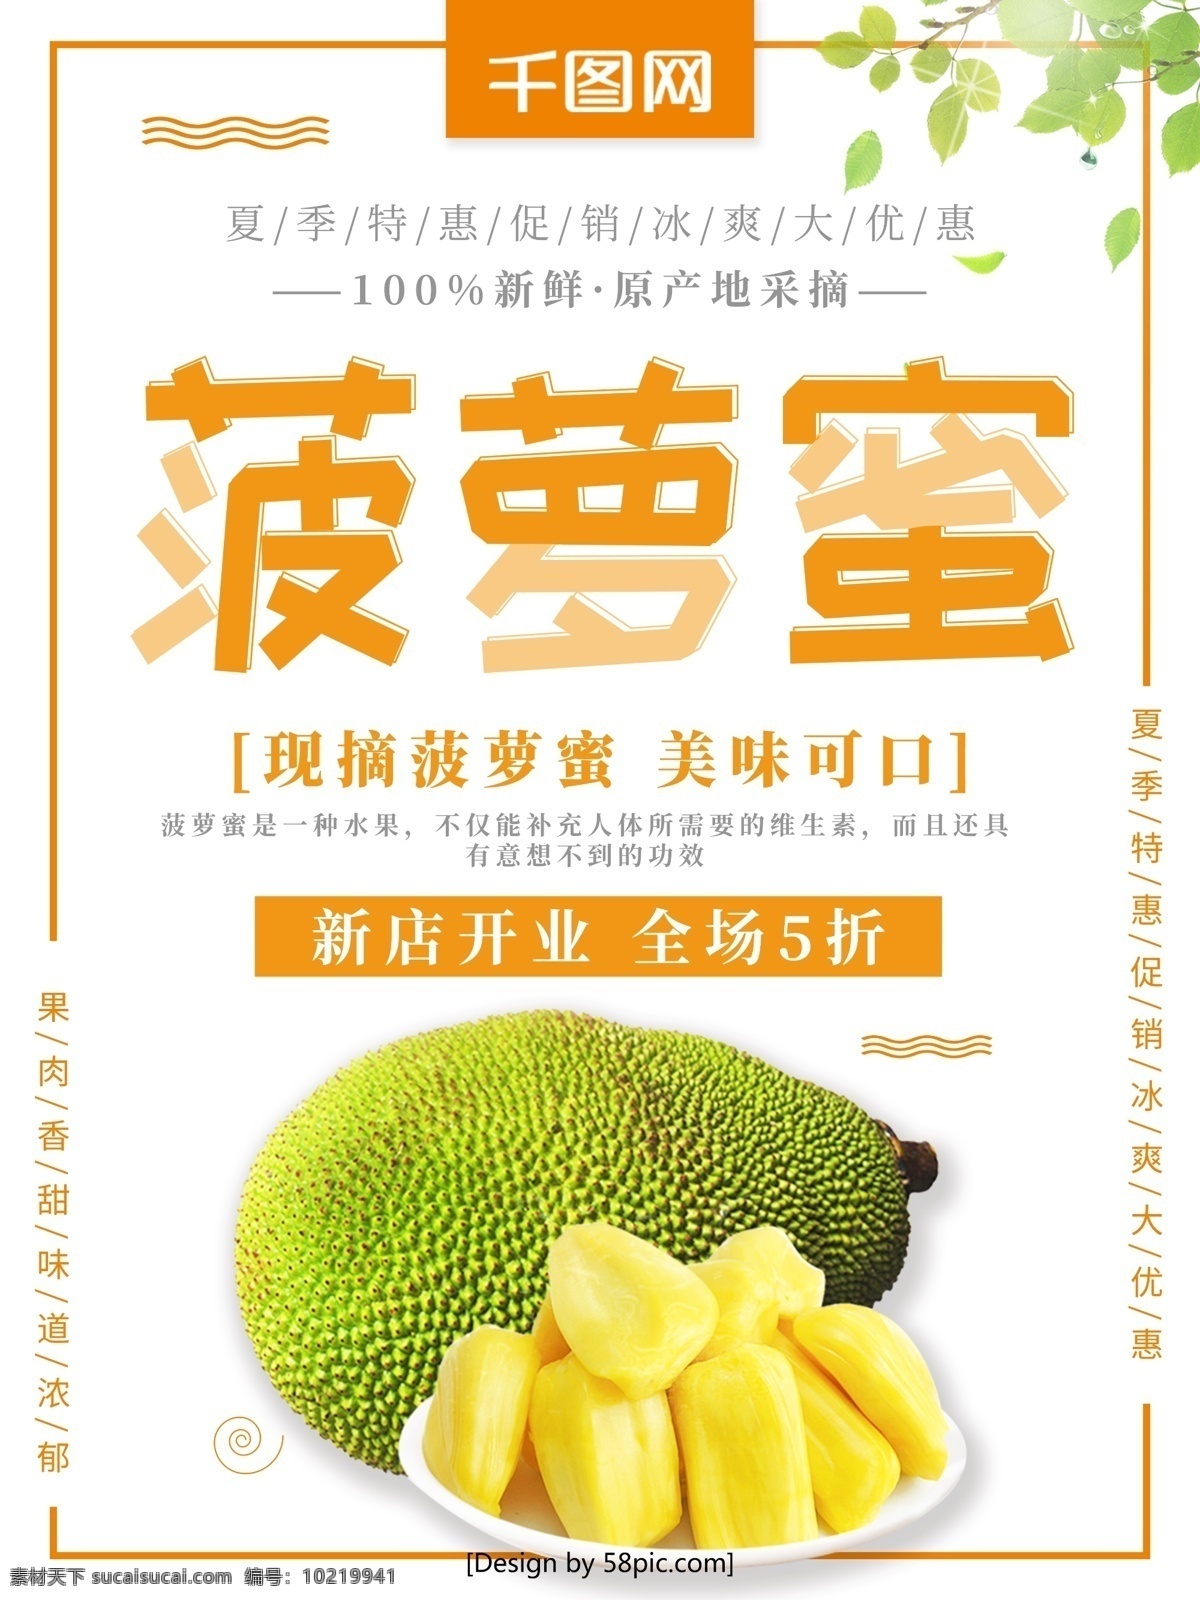 清新 菠萝蜜 夏季 特惠 水果 促销 宣传海报 宣传 美食 美食海报 菠萝 新鲜菠萝蜜 水果海报 菠萝蜜促销 市场促销 水果促销 夏季水果